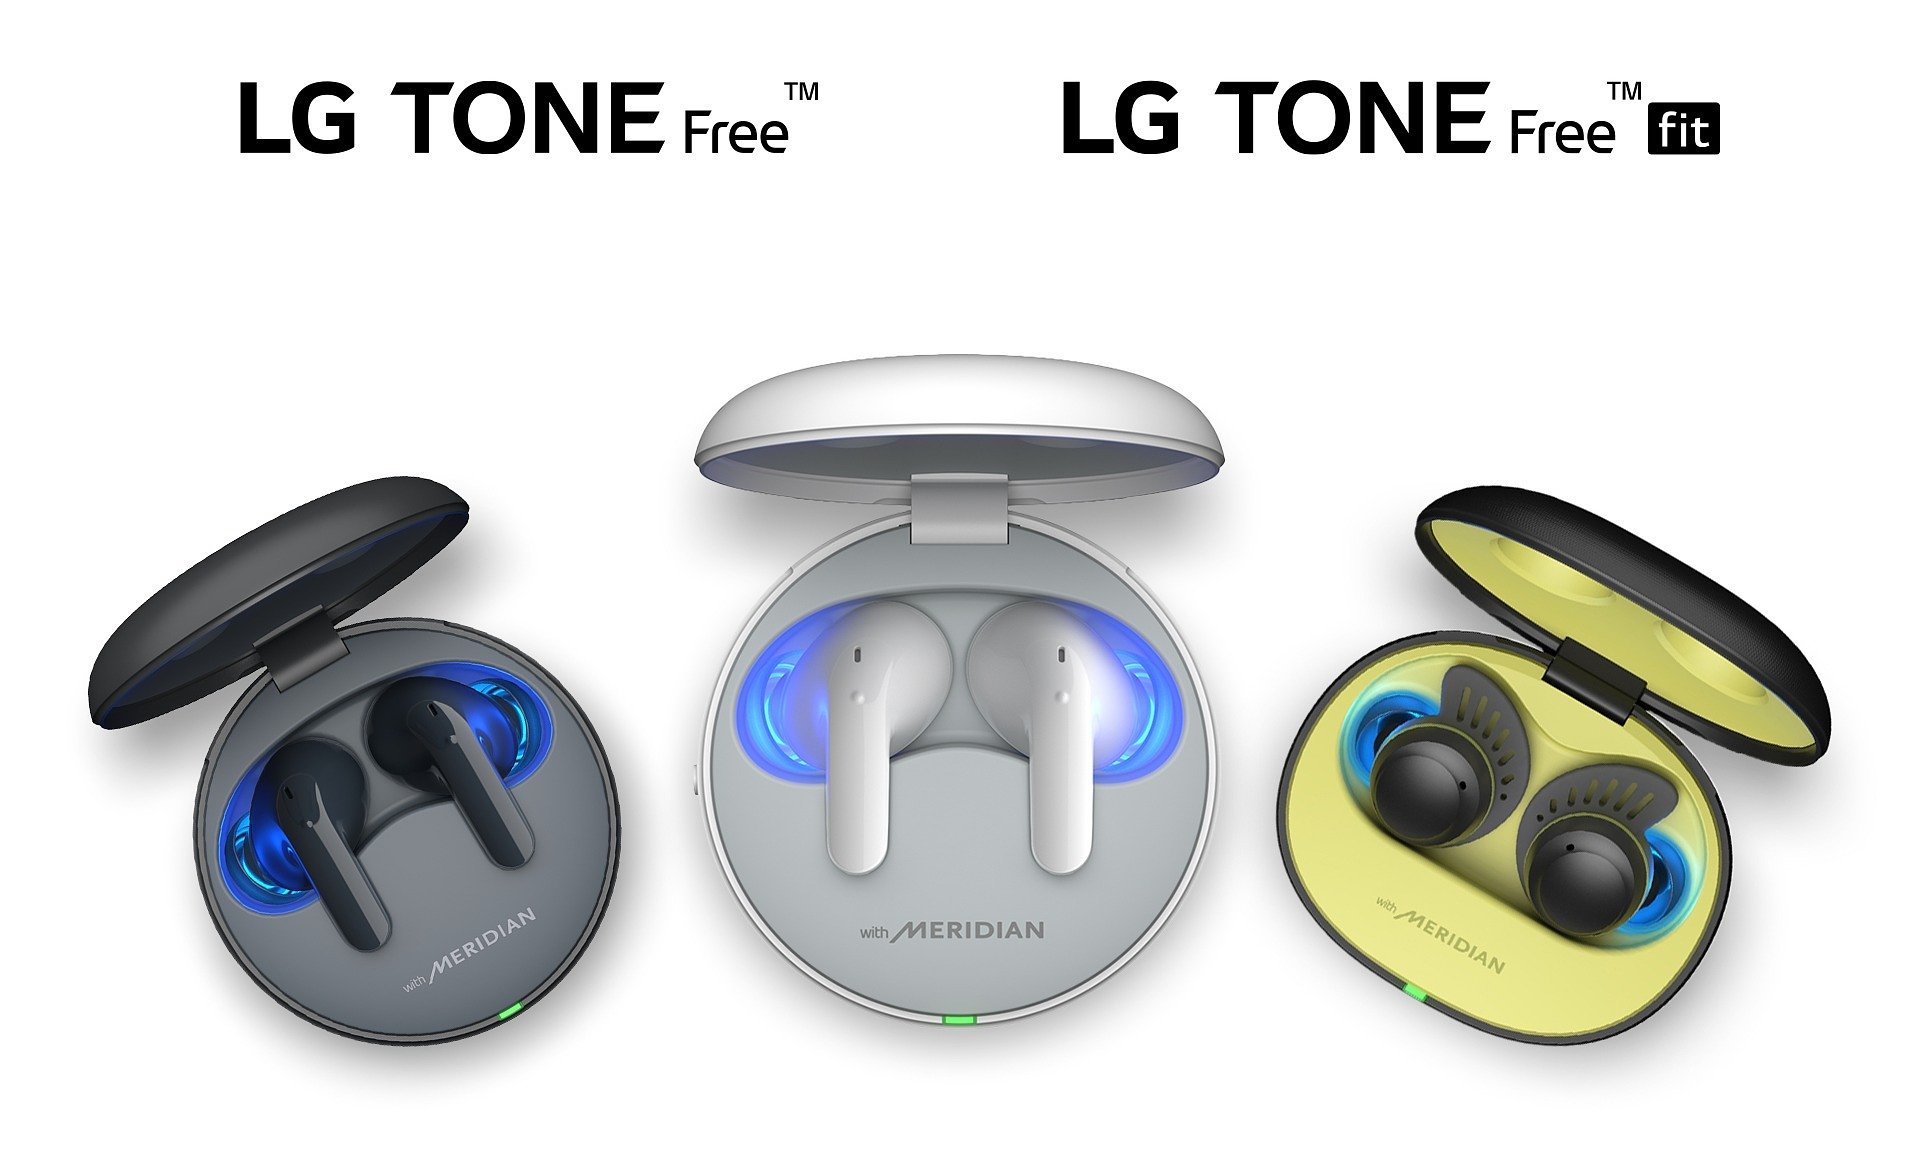 Nowe słuchawki LG TONE Free zapewniają lepszą jakość dźwięku i funkcje dostosowane do mobilnego stylu życia